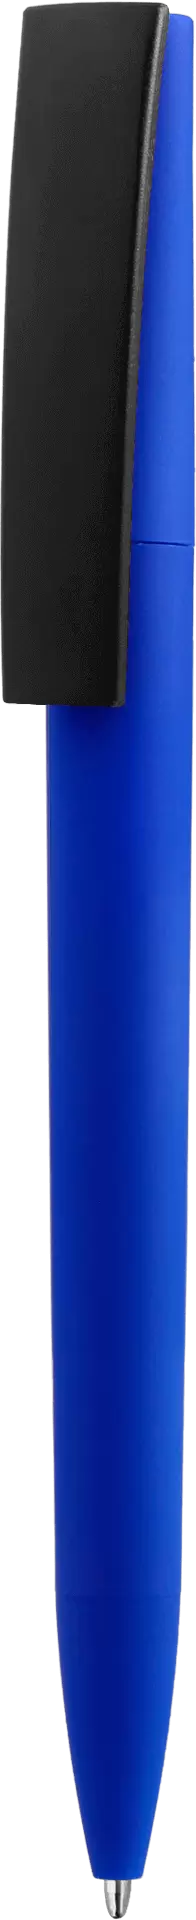 Ручка ZETA SOFT MIX Синяя с черным 1024-01-08